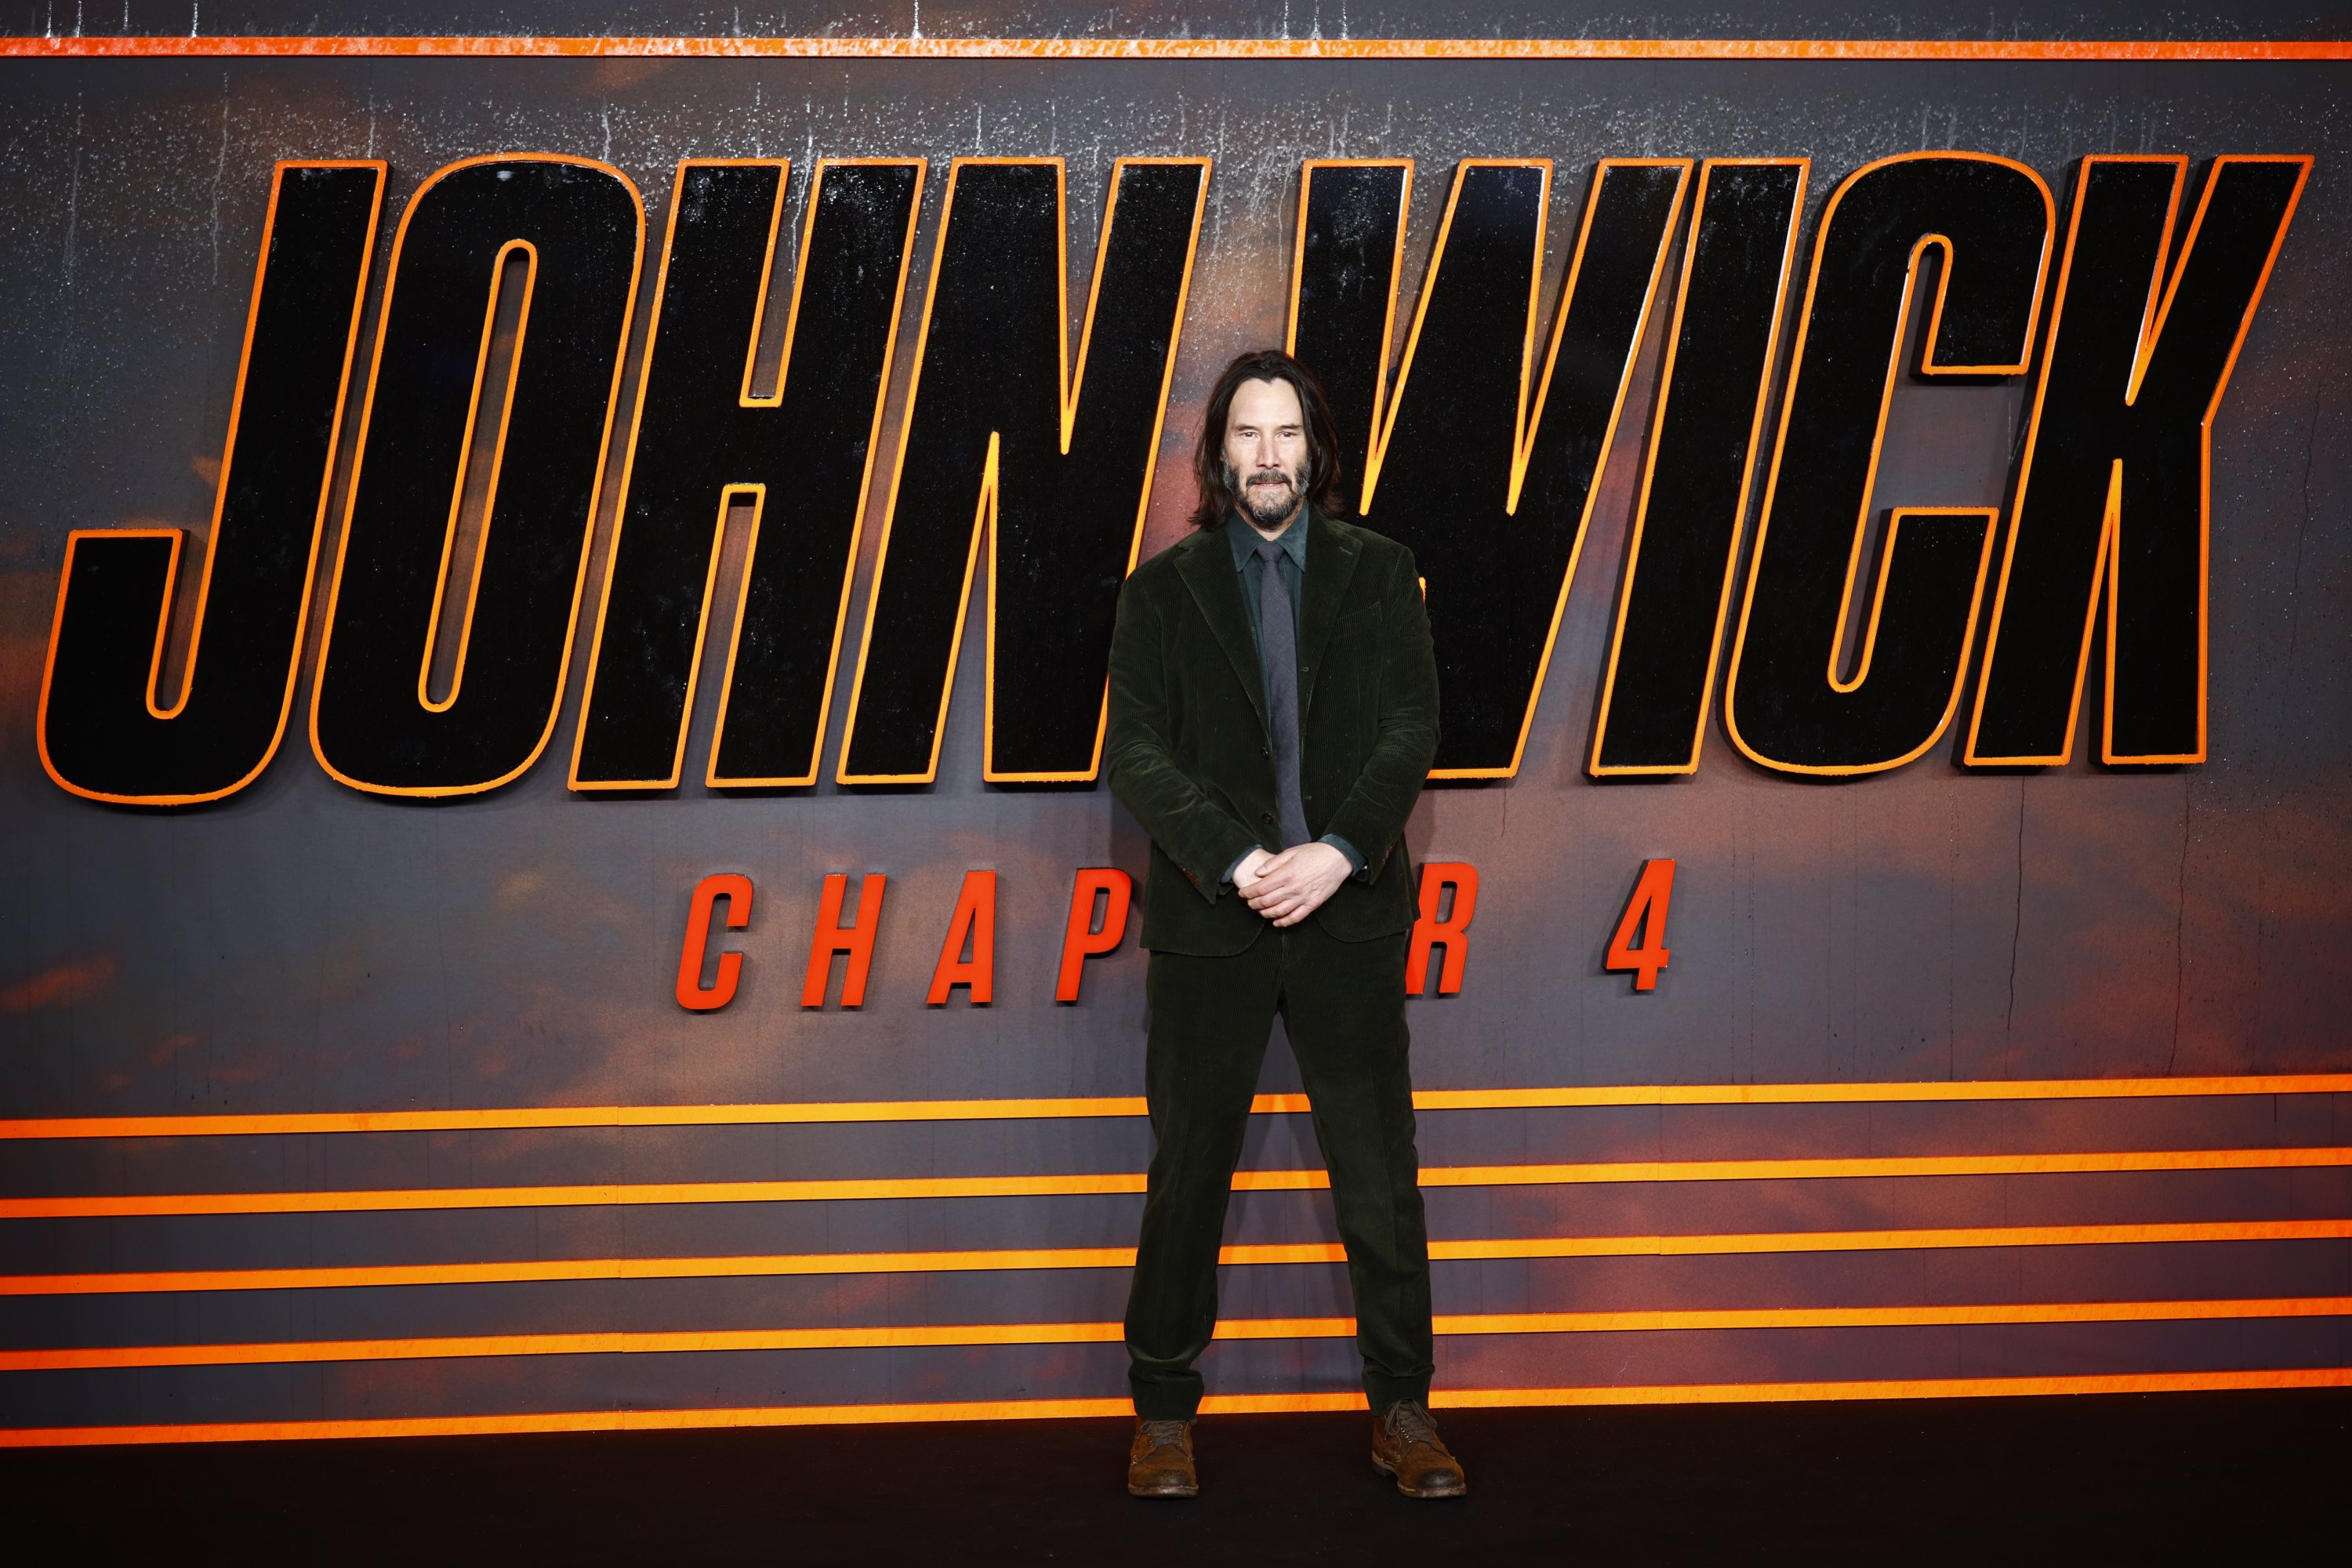 Keanu Reeves' 'John Wick 4' pushed back to 2023 